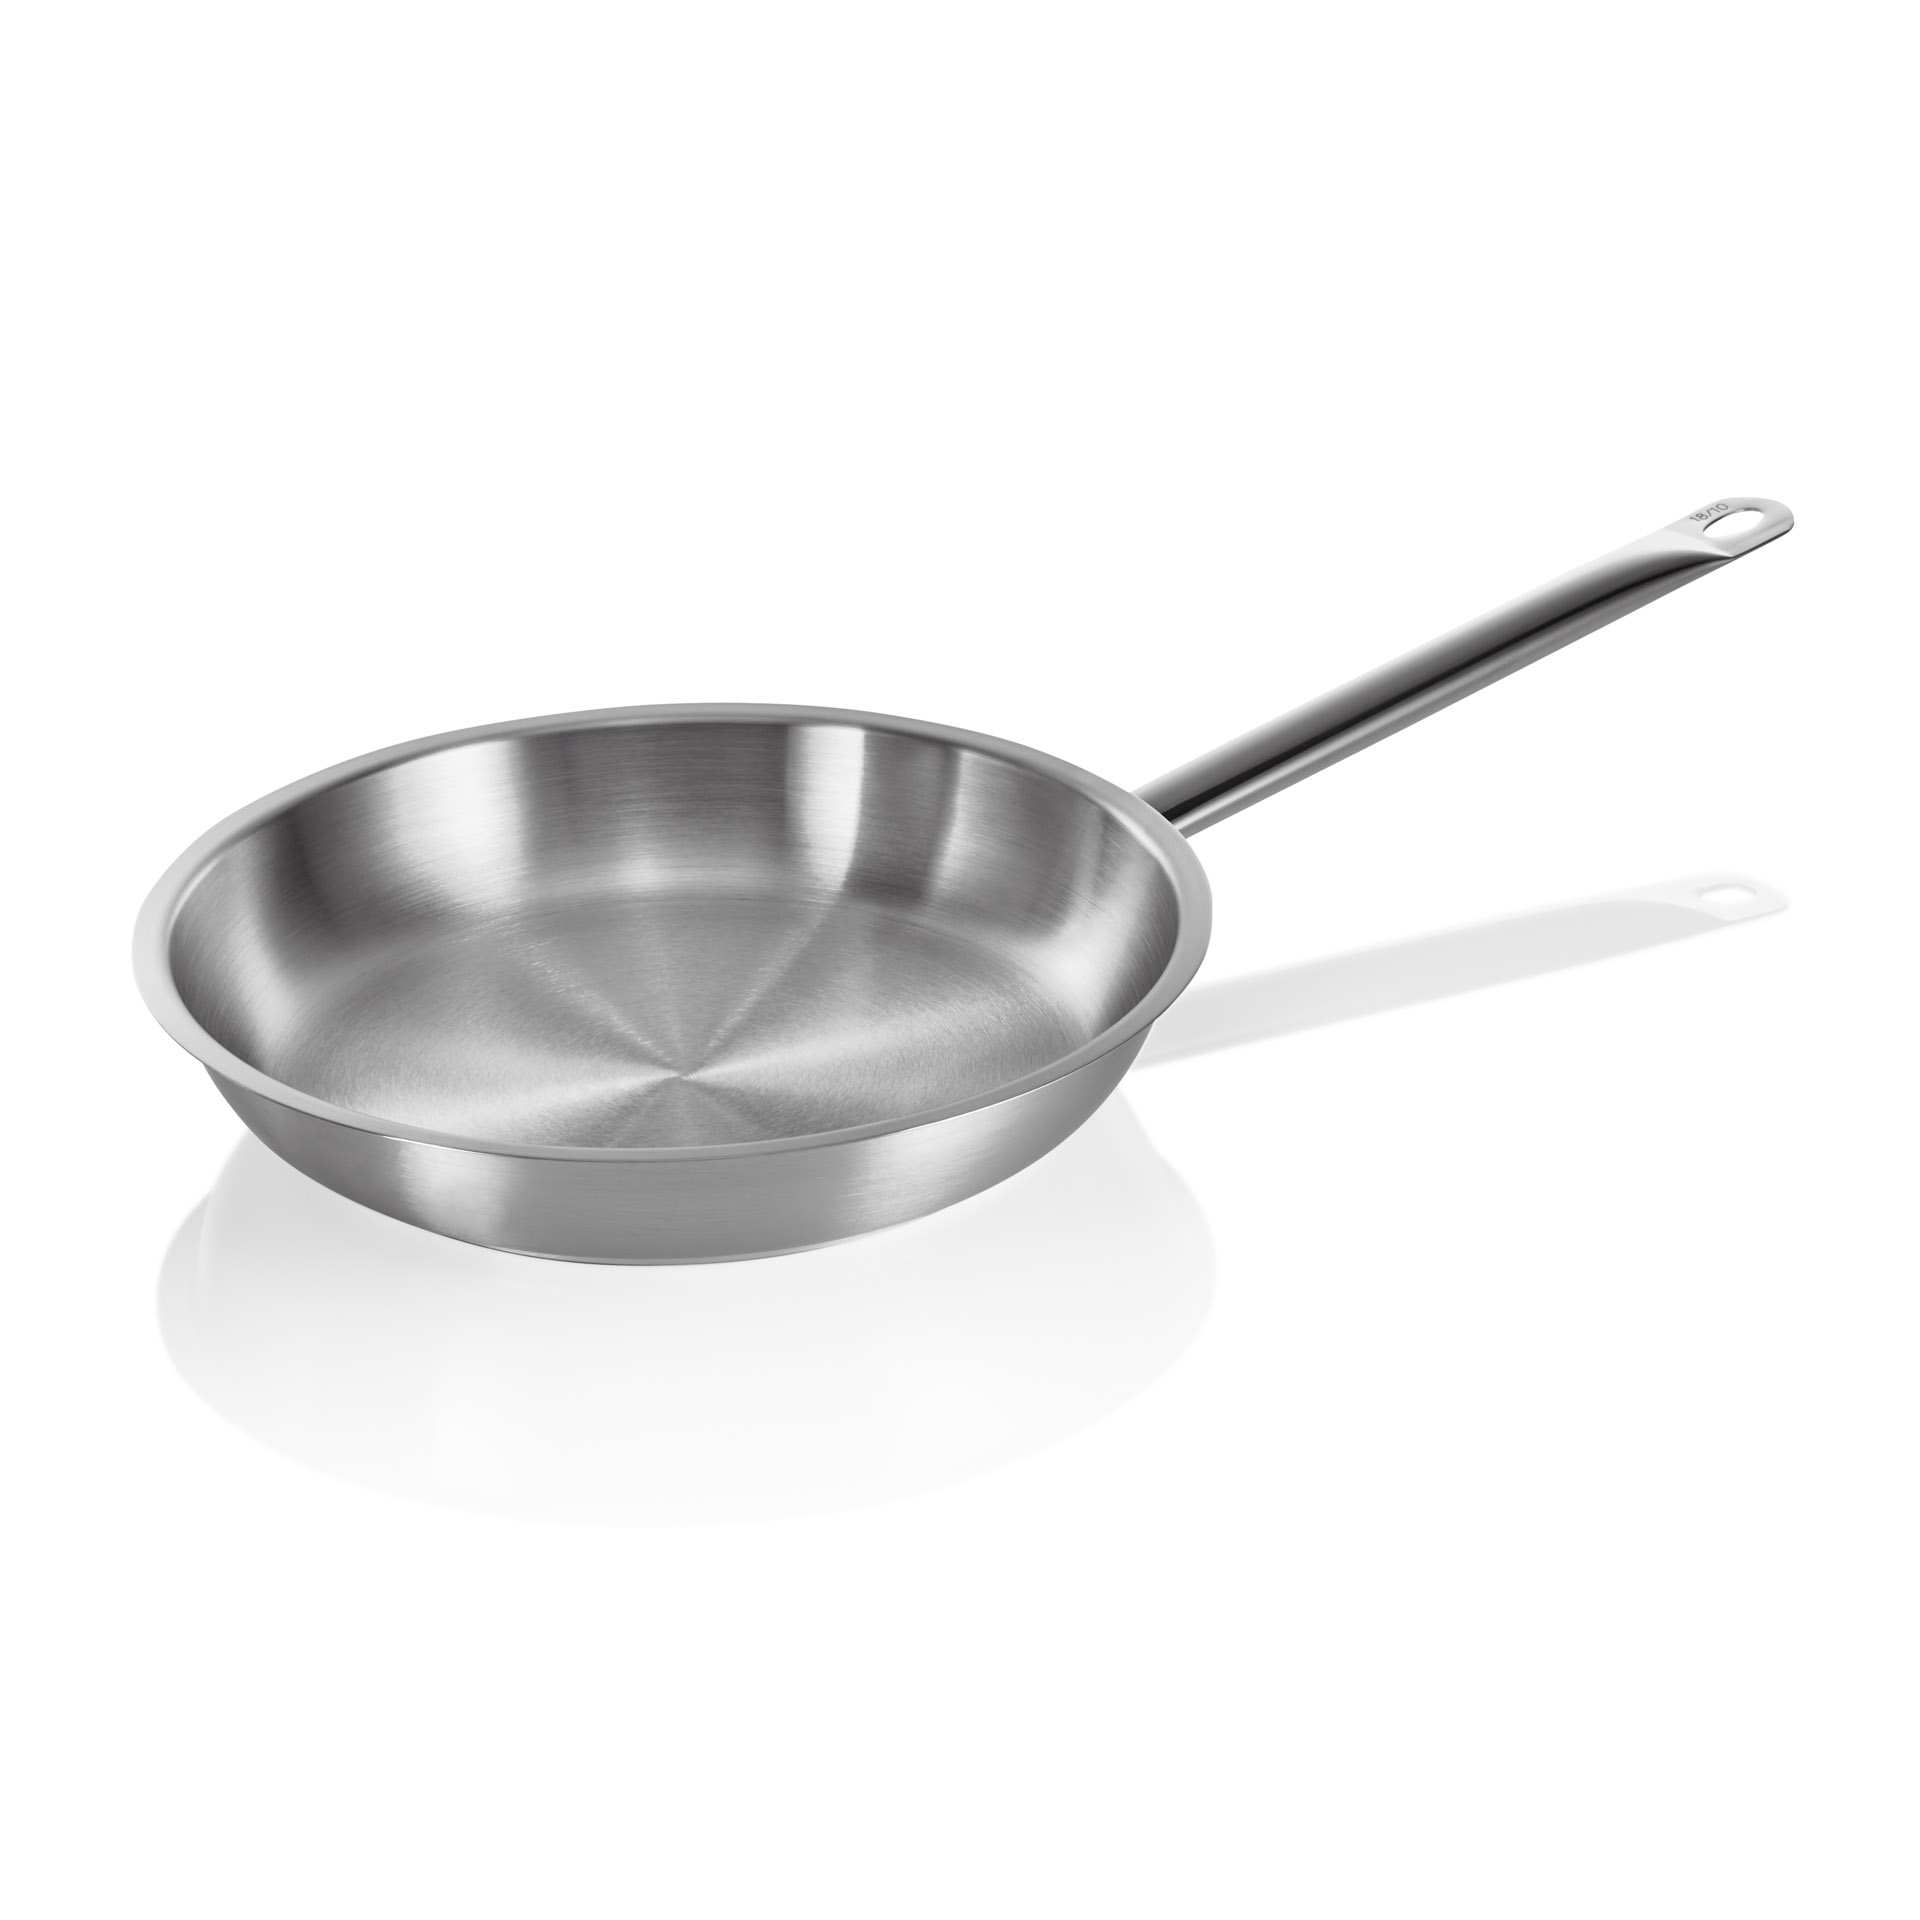 Pfanne - mit Schüttrand - Serie Cookware - rund - Höhe 6 cm - Ø oben / unten 32 / 25 cm - Chromnickelstahl - 2103320-A